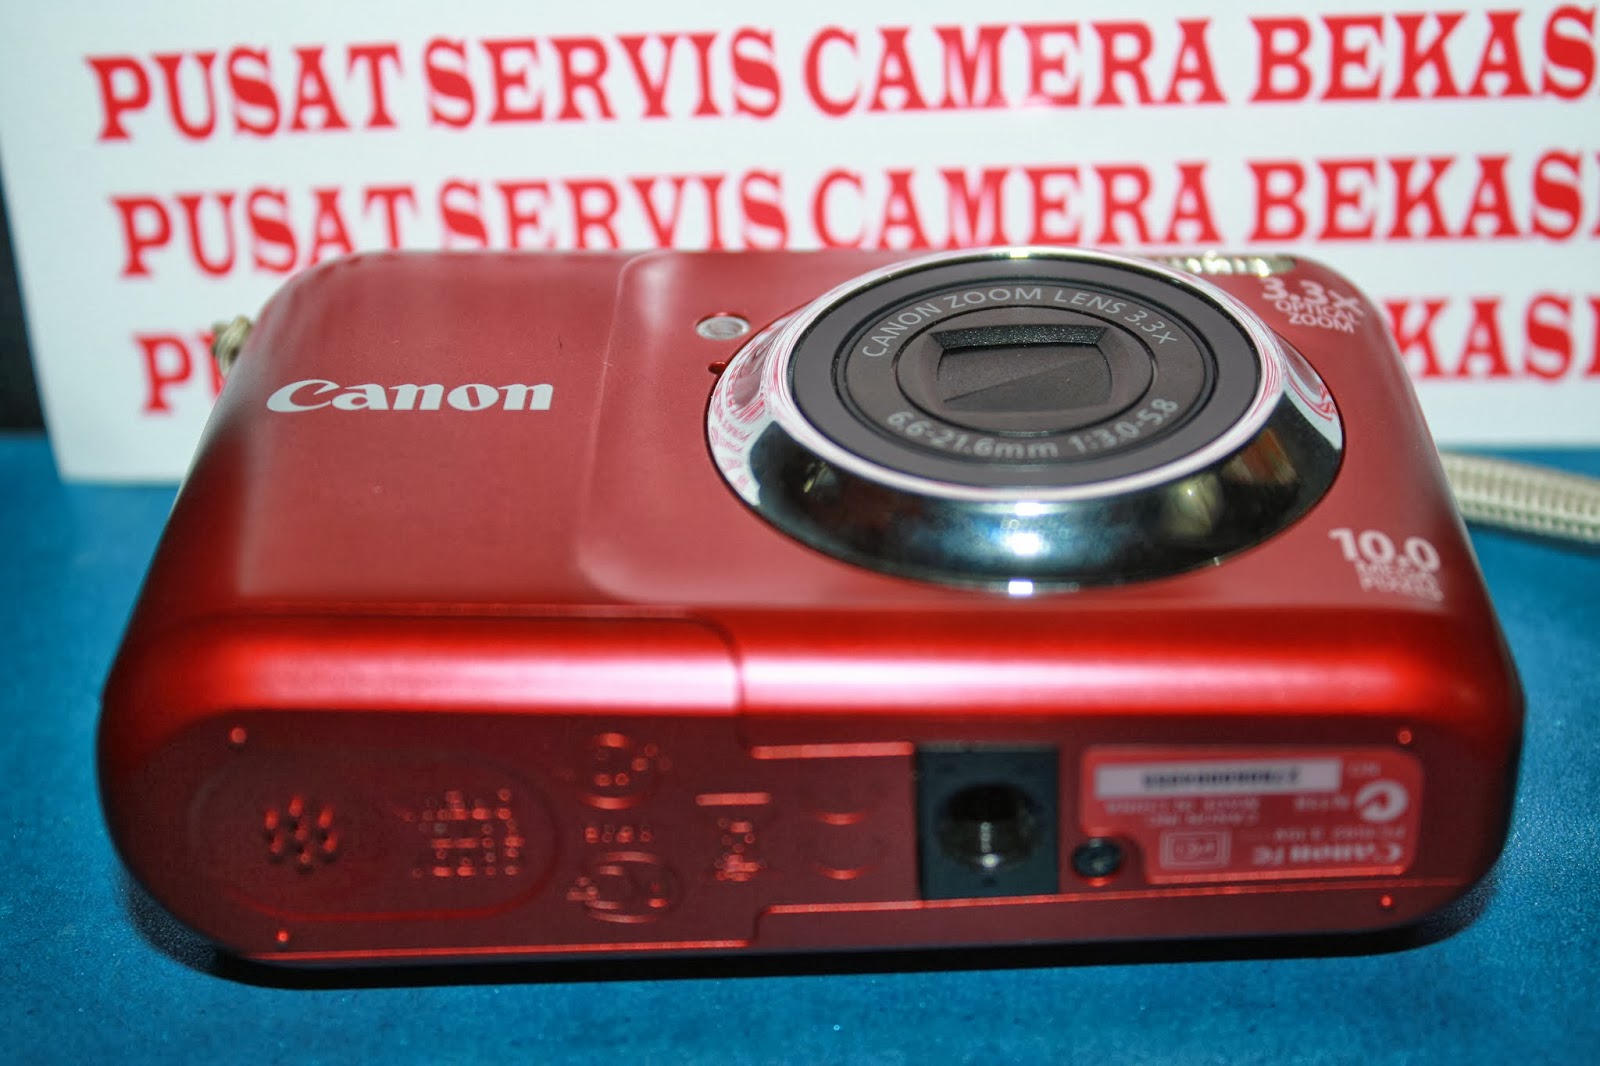 PUSAT SERVICE BEKASI SERVICE CAMERA DIGITAL: DIJUAL Camera 